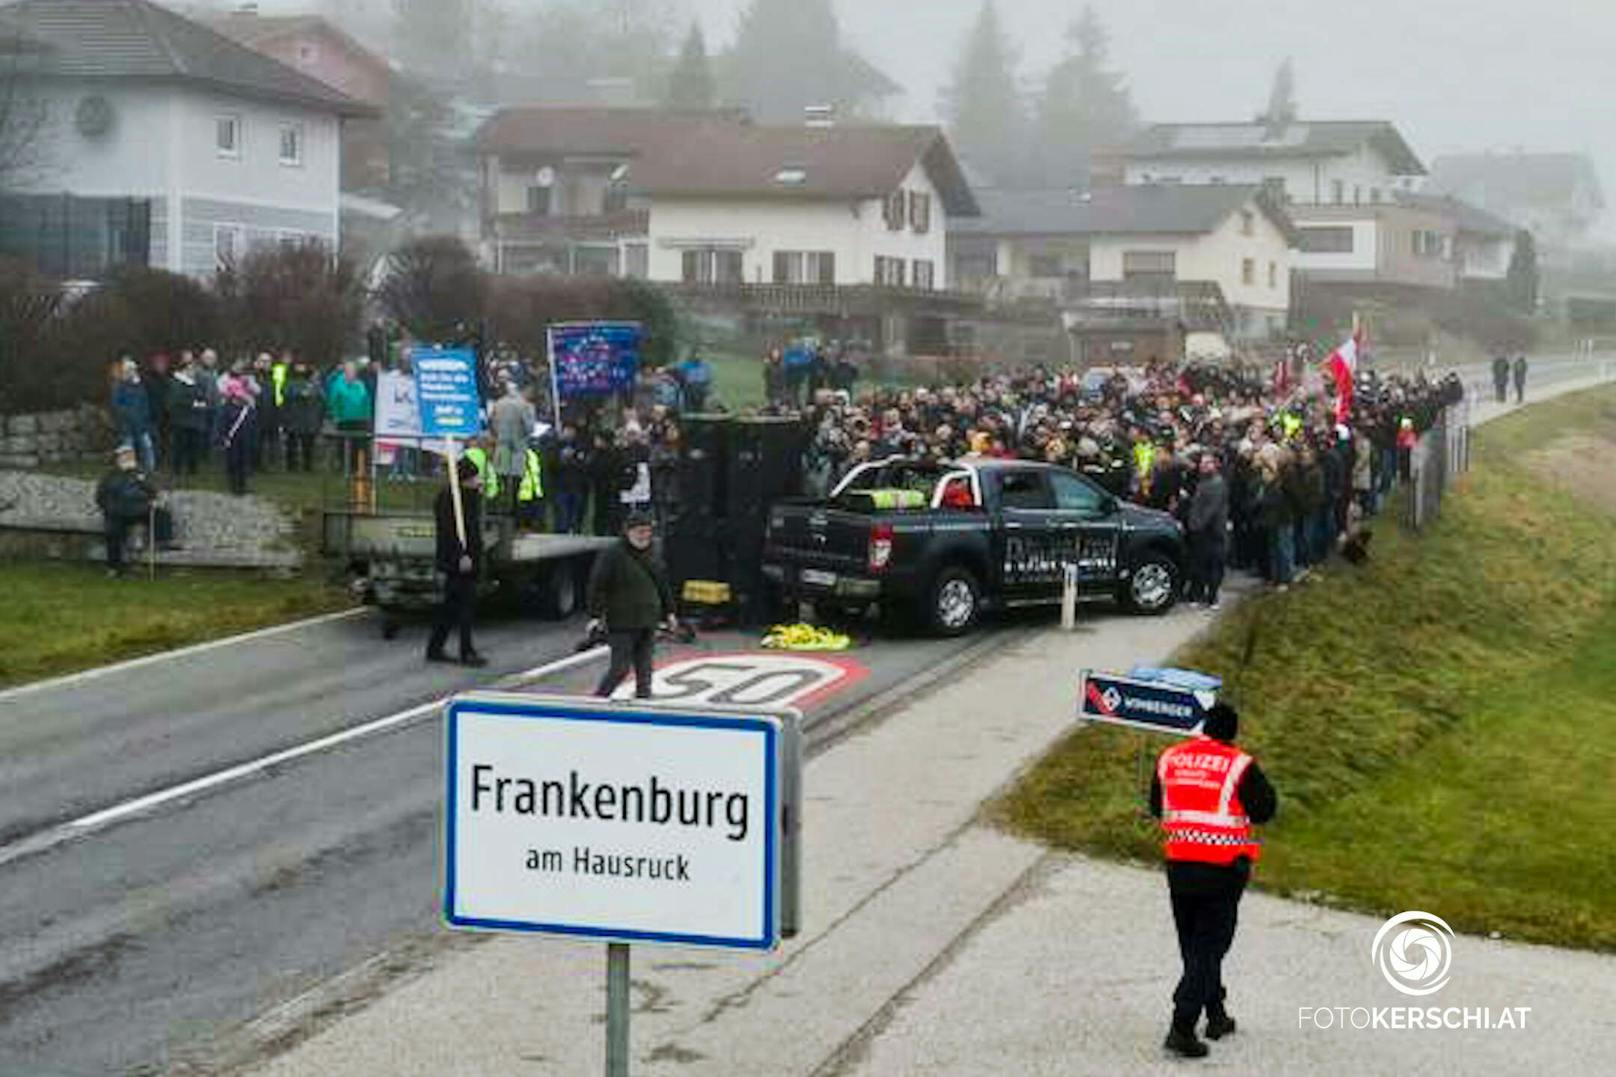 In der Gemeinde Frankenburg (Bez. Vöcklabruck) wurde am Sonntagnachmittag demonstriert. Laut Angaben der Behörden waren rund 50 Teilnehmer dabei.